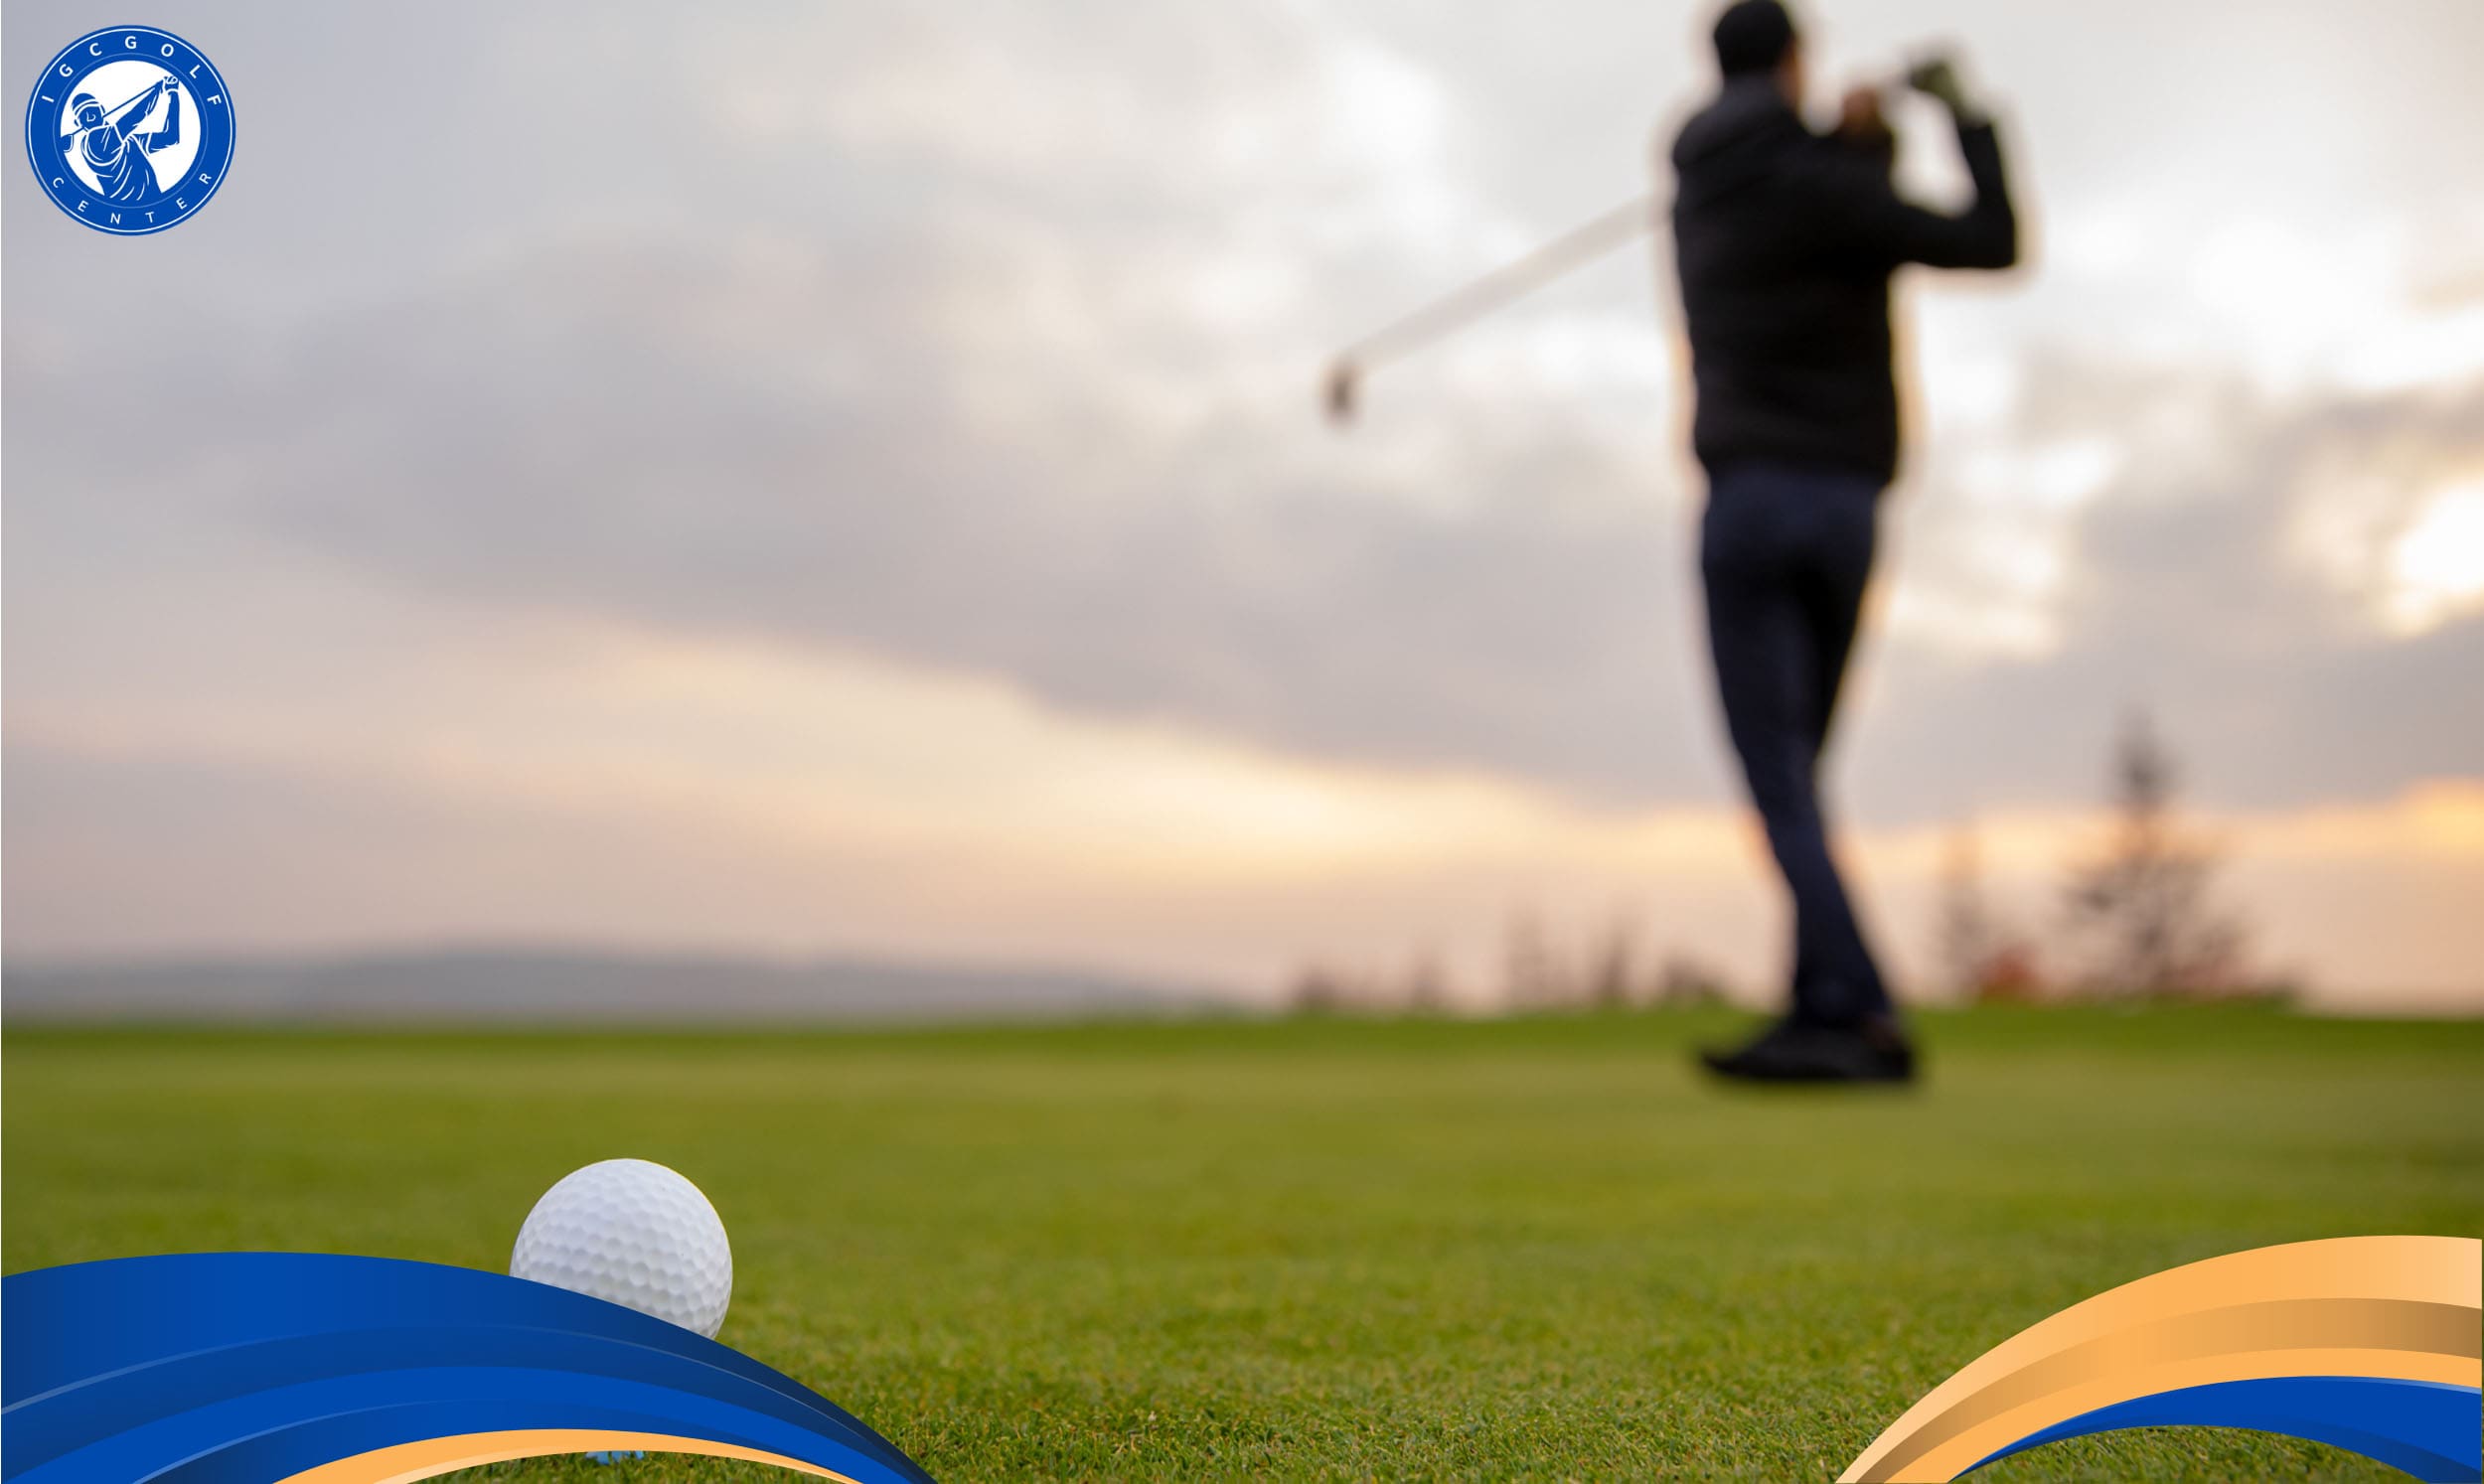 Học golf cơ bản và nâng cao tại các câu lạc bộ golf nổi tiếng tại TP. HCM